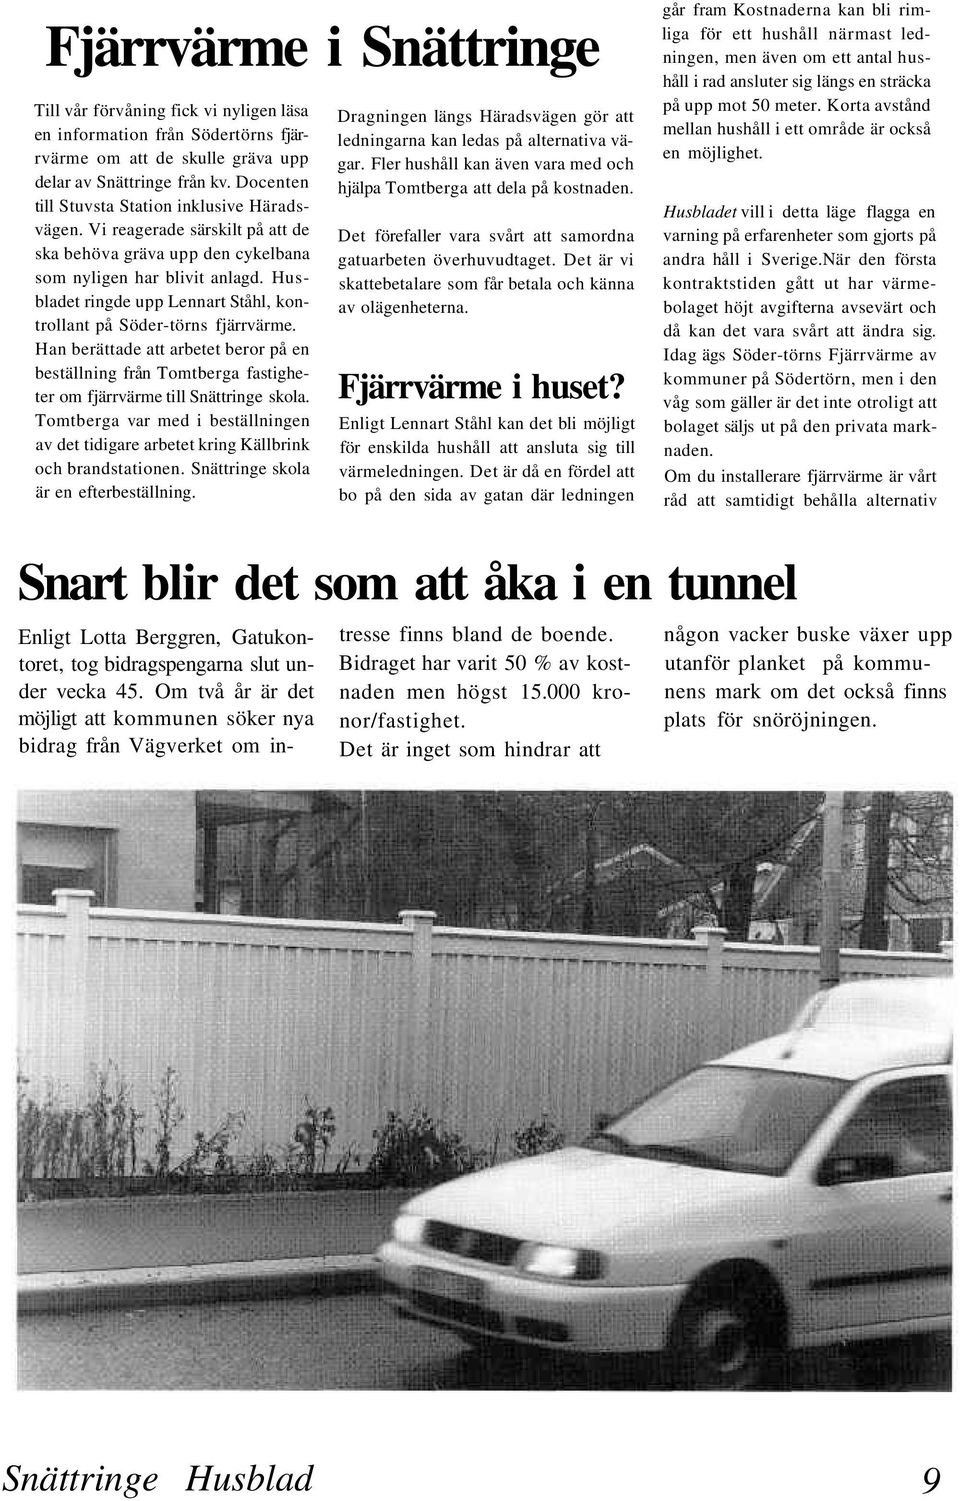 Husbladet ringde upp Lennart Ståhl, kontrollant på Söder-törns fjärrvärme. Han berättade att arbetet beror på en beställning från Tomtberga fastigheter om fjärrvärme till Snättringe skola.